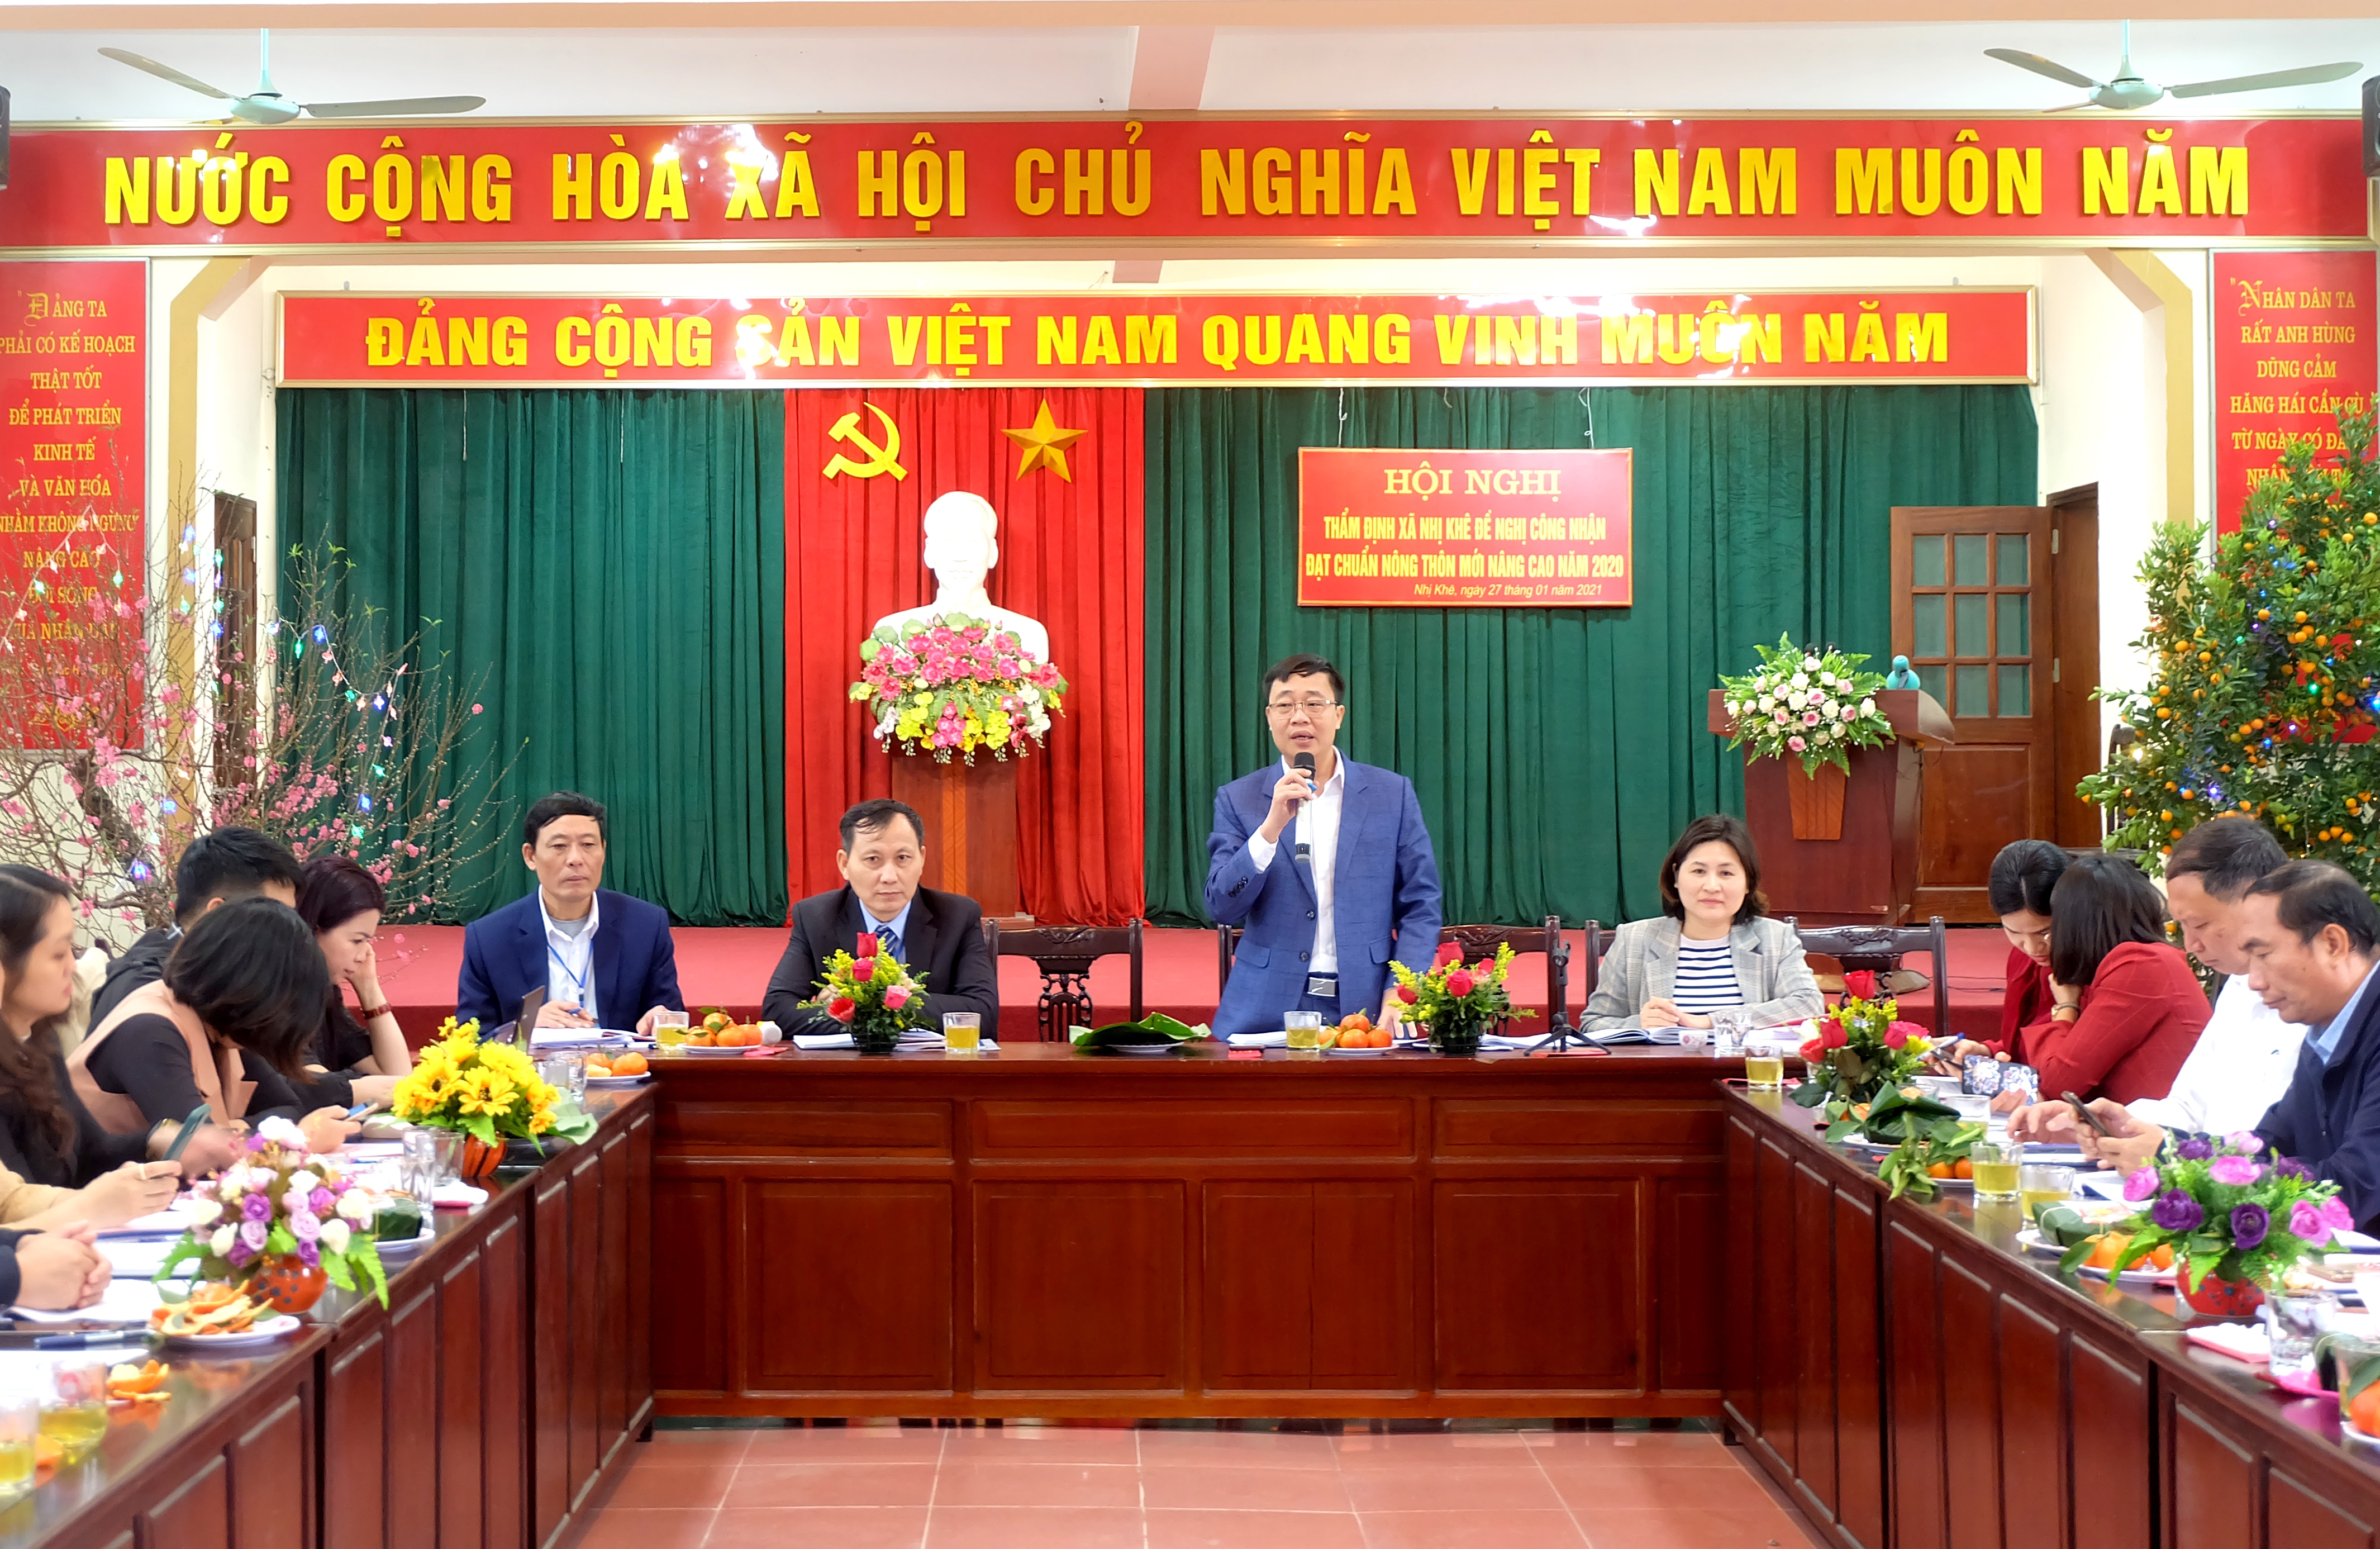 Thẩm định các xã của huyện Thường Tín đạt chuẩn nông thôn mới nâng cao